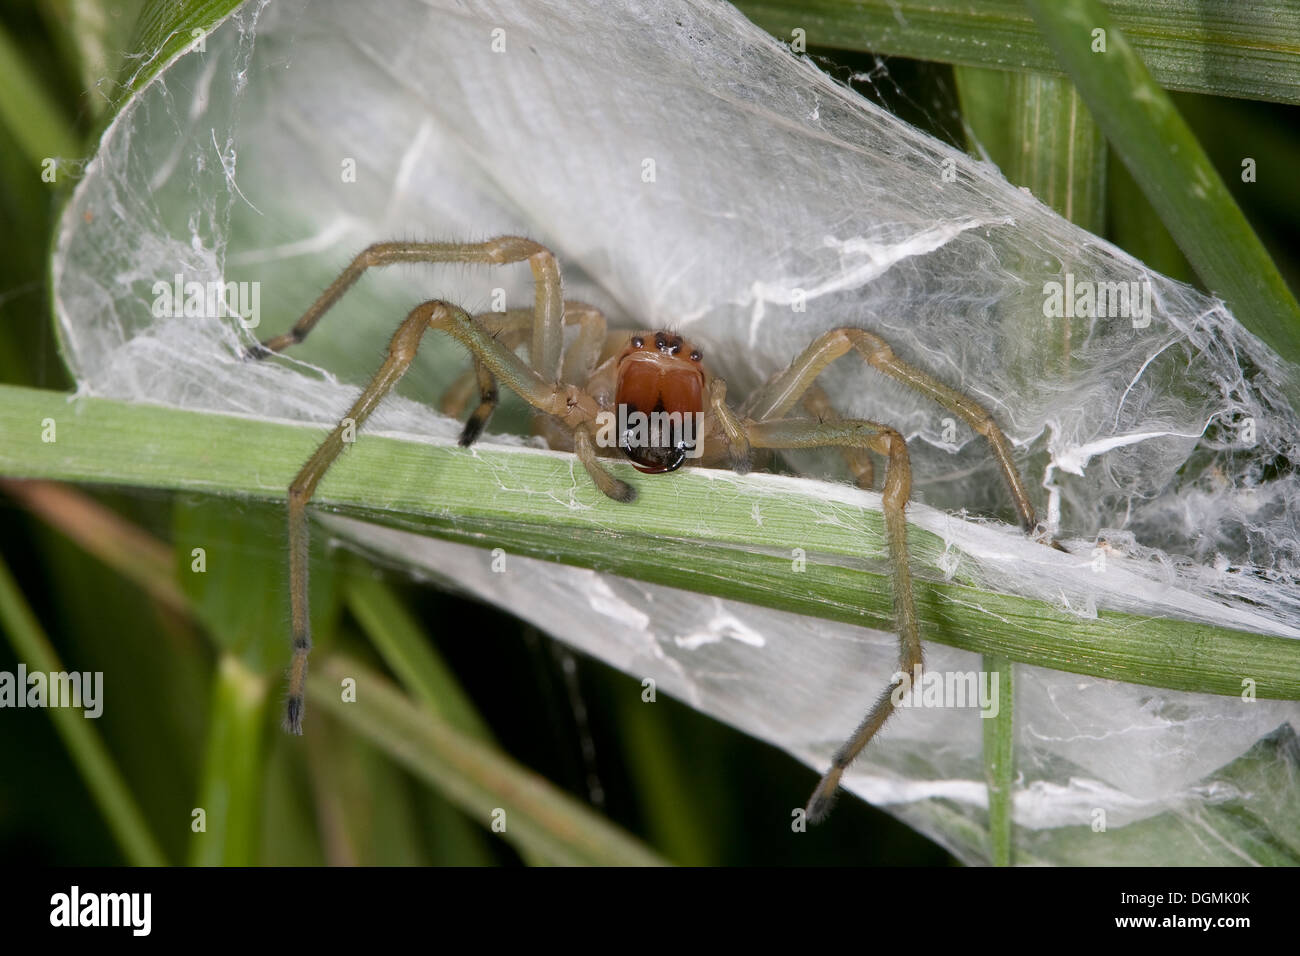 Yellow sack spider, Dornfinger, Ammen-Dornfinger, Dornfinger-Spinne, Cheiracanthium punctorium, Clubionidae, Giftspinne Stock Photo